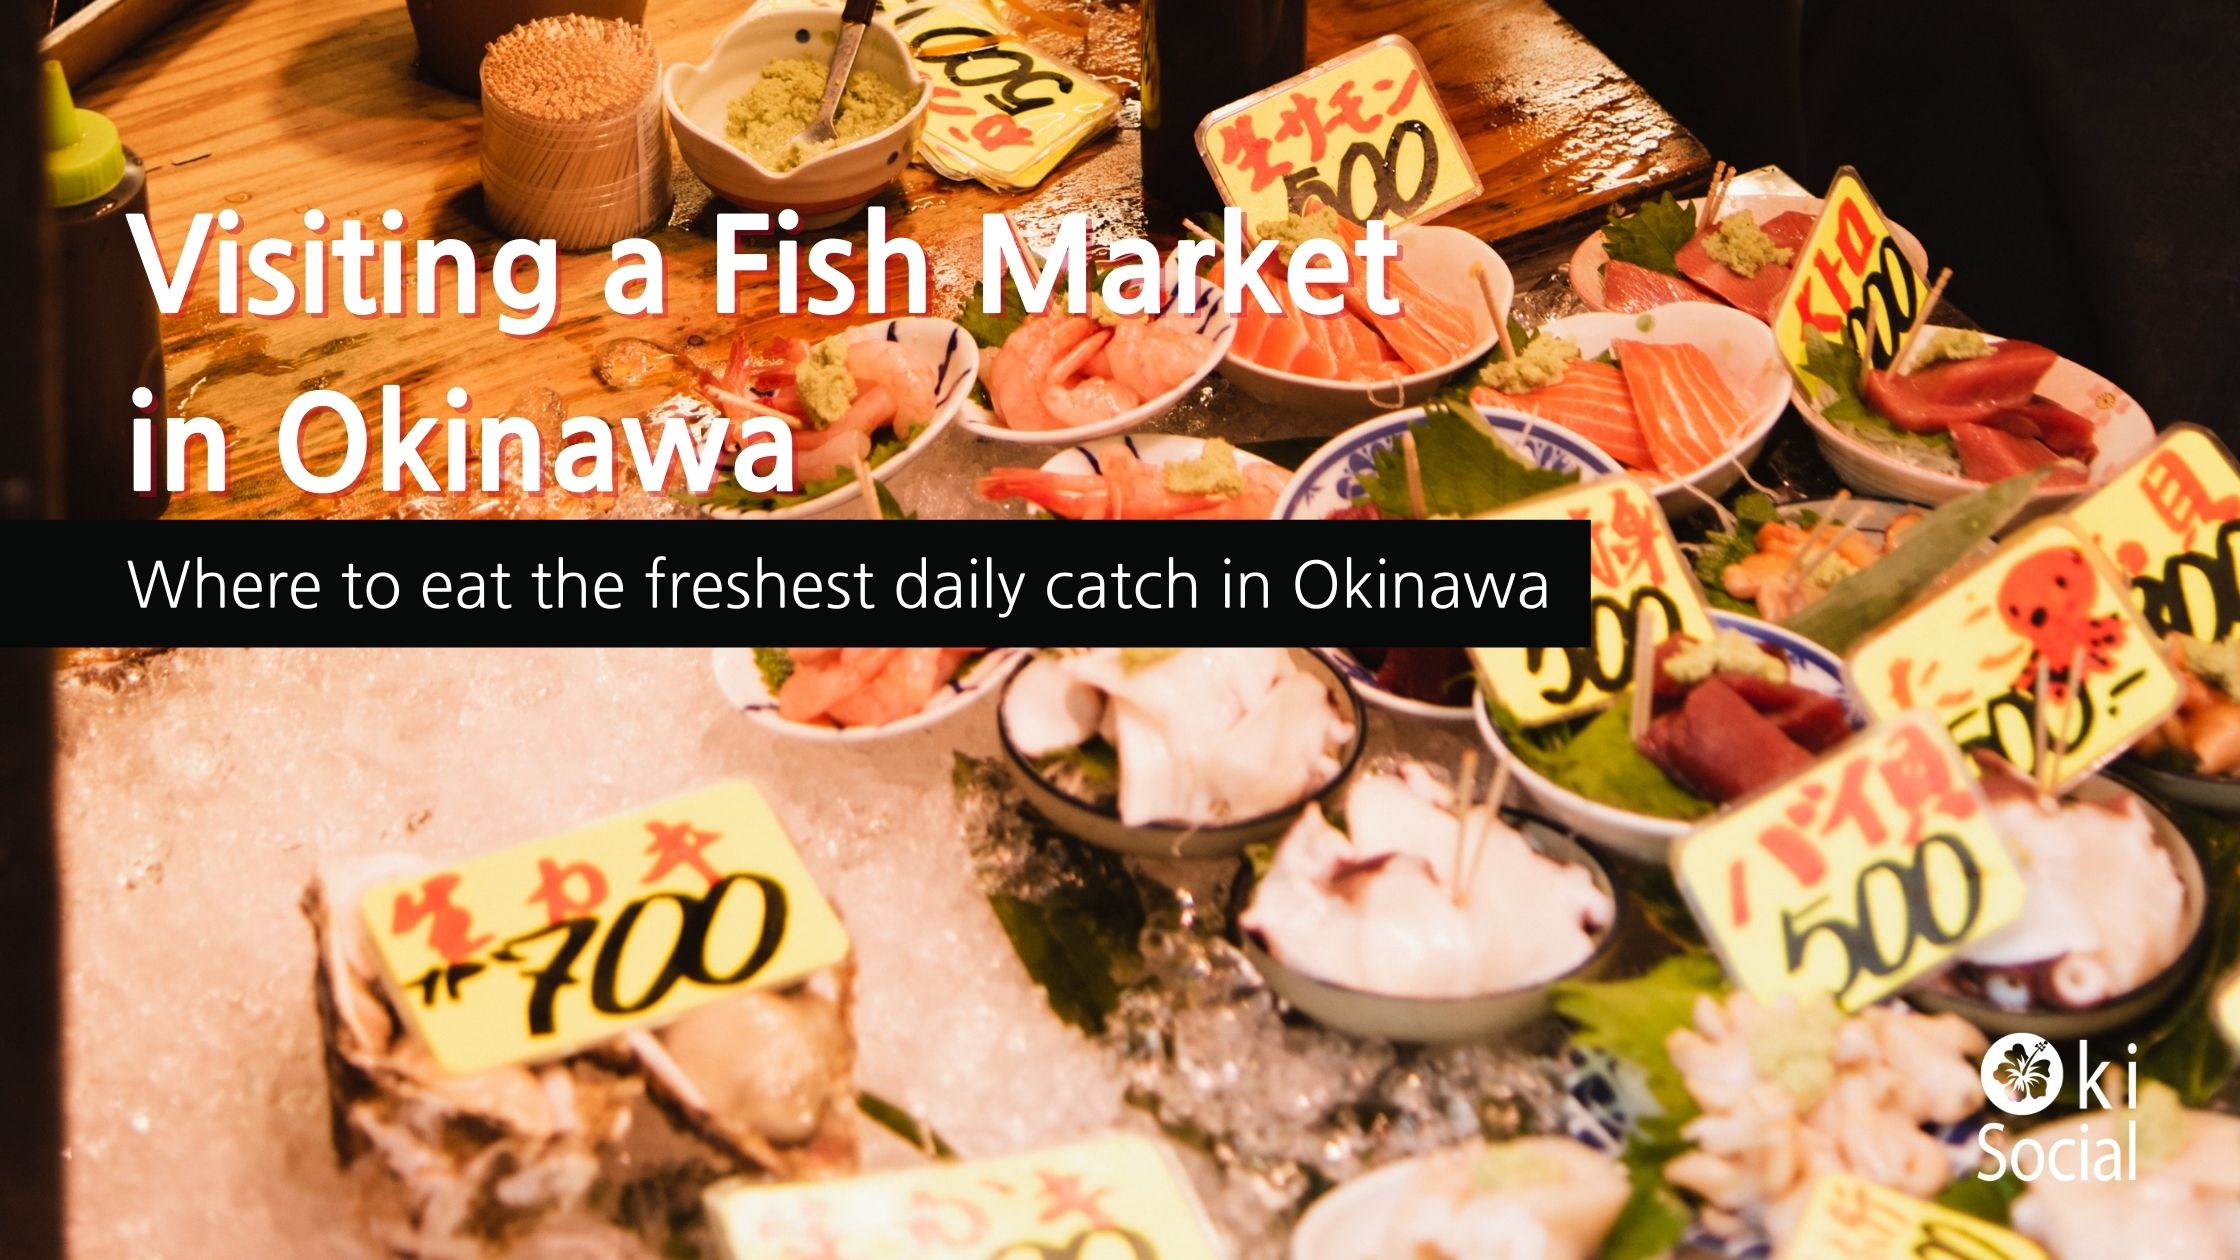 Visiting a Fish Market in Okinawa